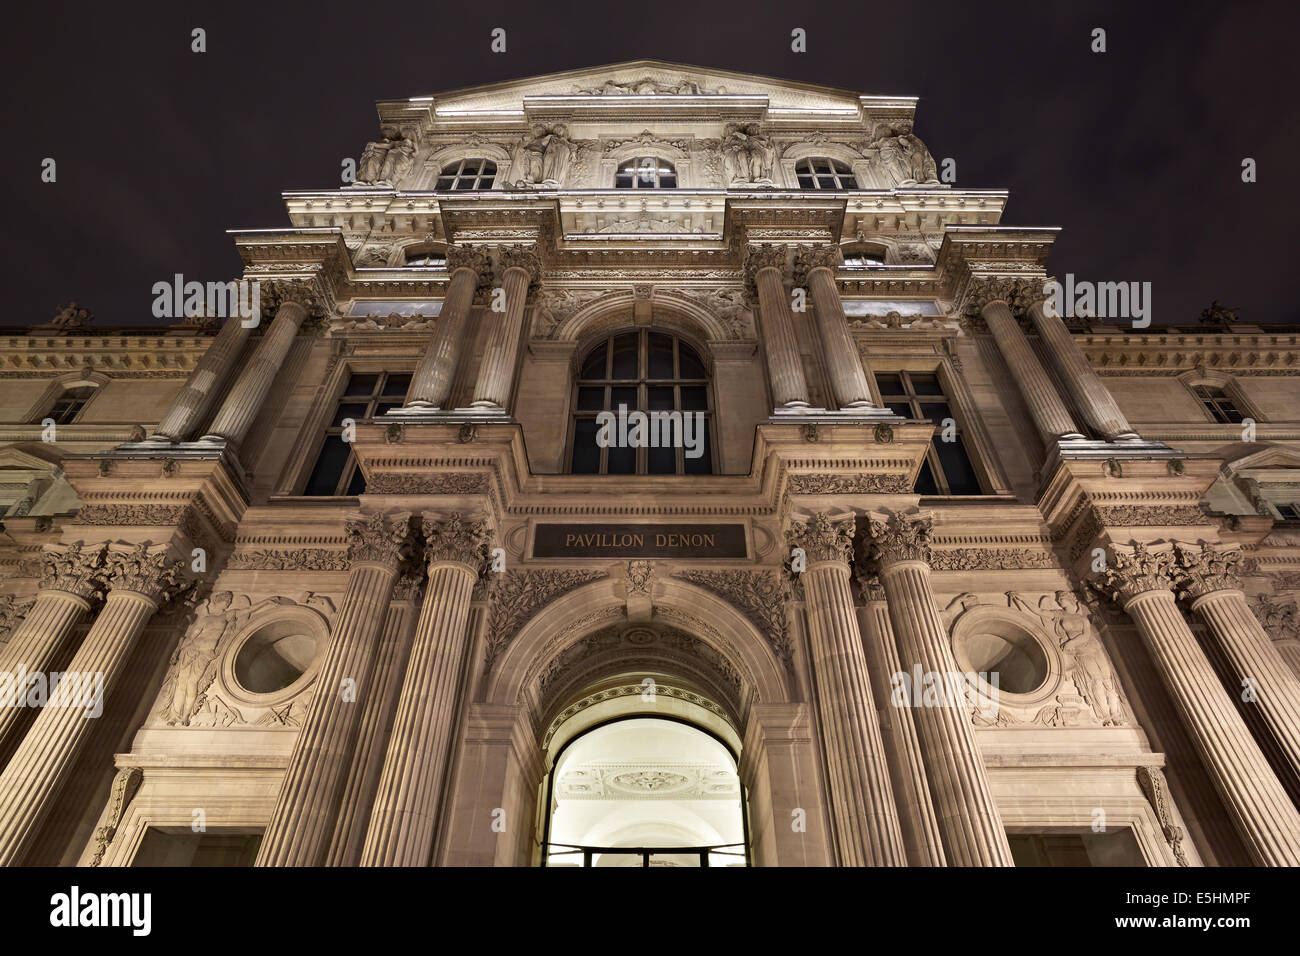 Louvre museum facade in Paris, pavilion Denon, France Stock Photo